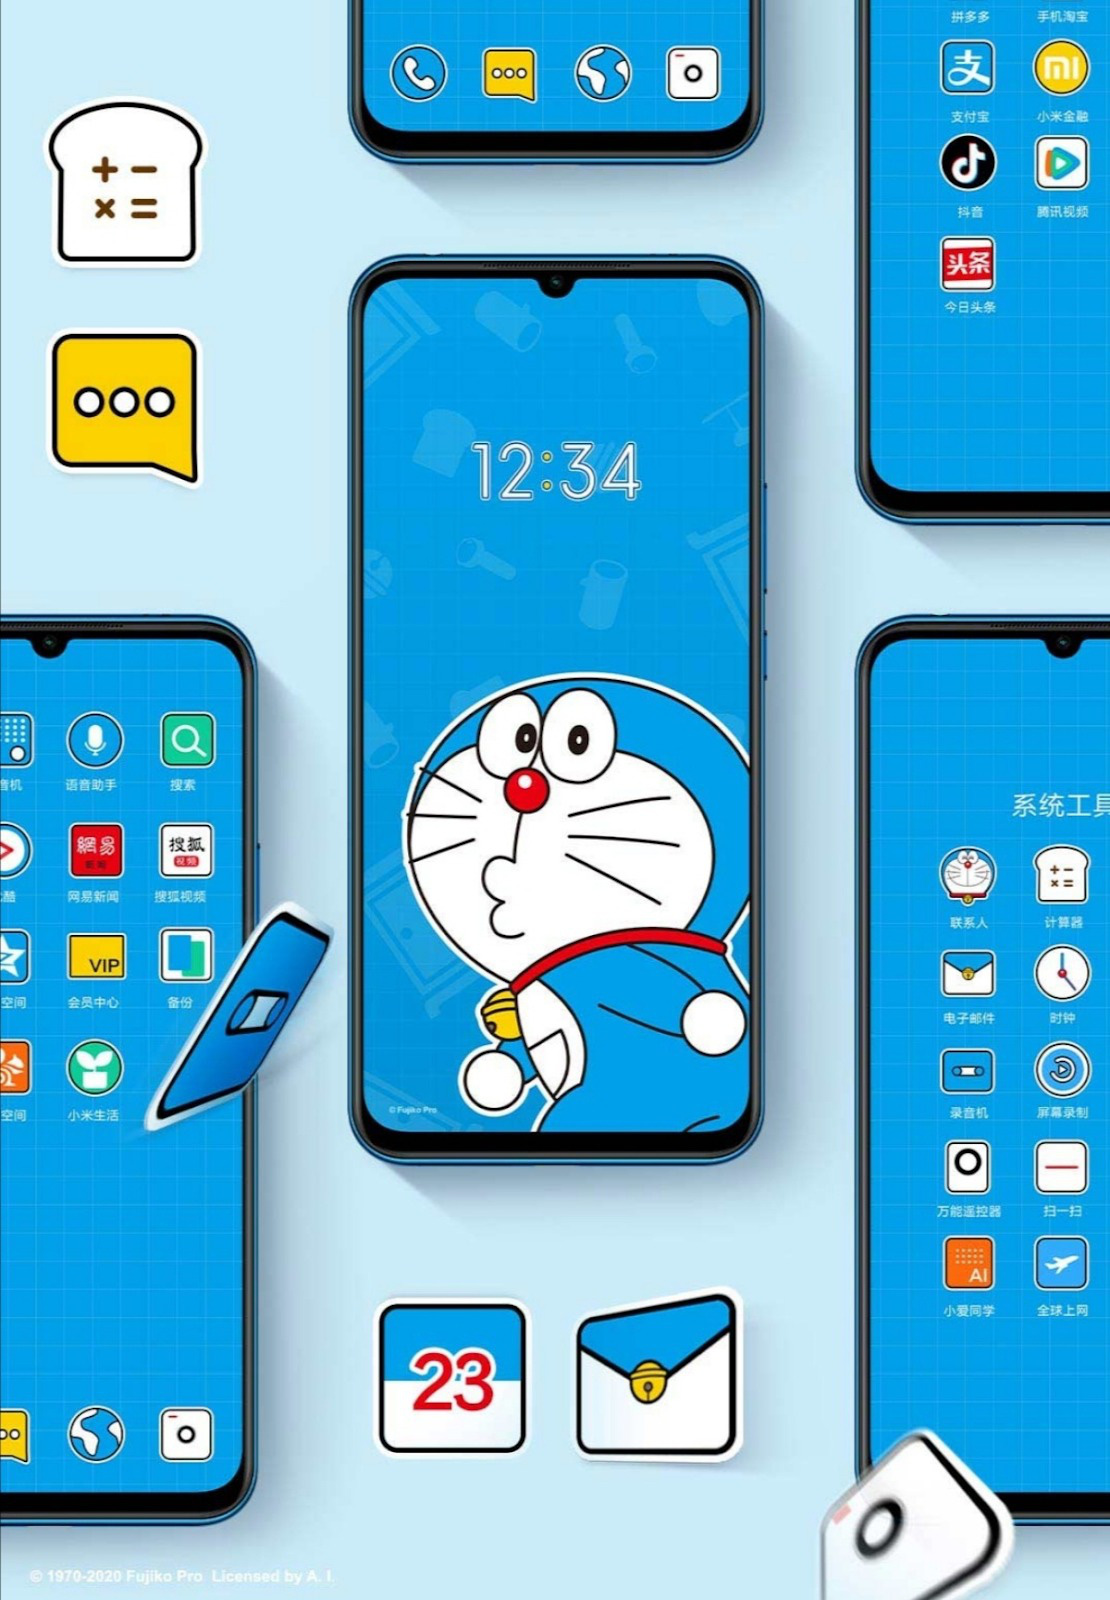 Hình ảnh Doraemon được khai thác có bản quyền - VnExpress Giải trí